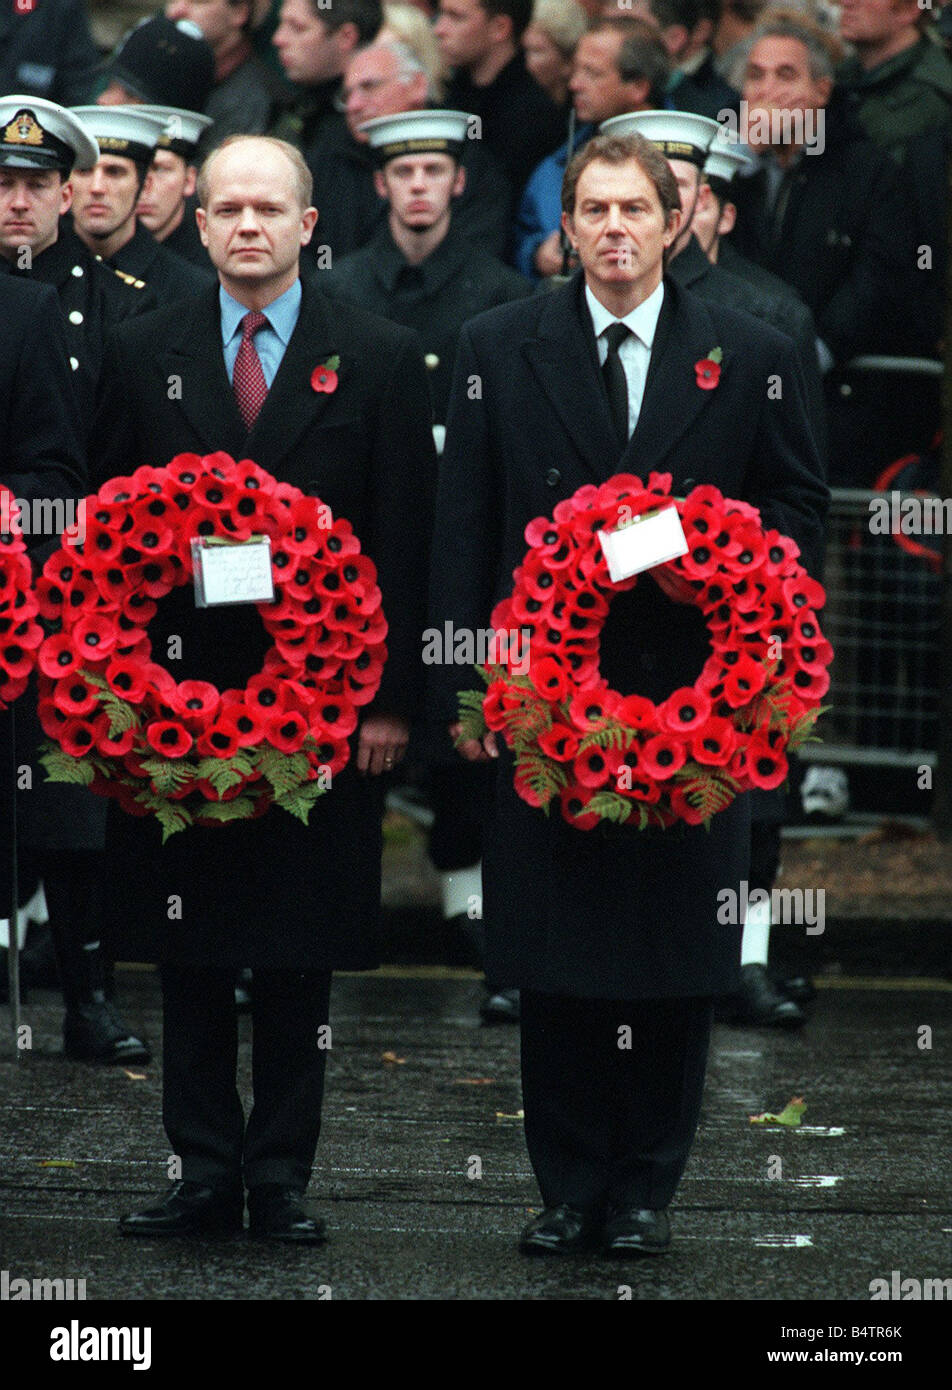 Premierminister Tony Blair und William Haag konservative MP Führer der Oposition bei der Kenotaph Whitehall halten Mohn Kränze am Tag der Erinnerung Stockfoto